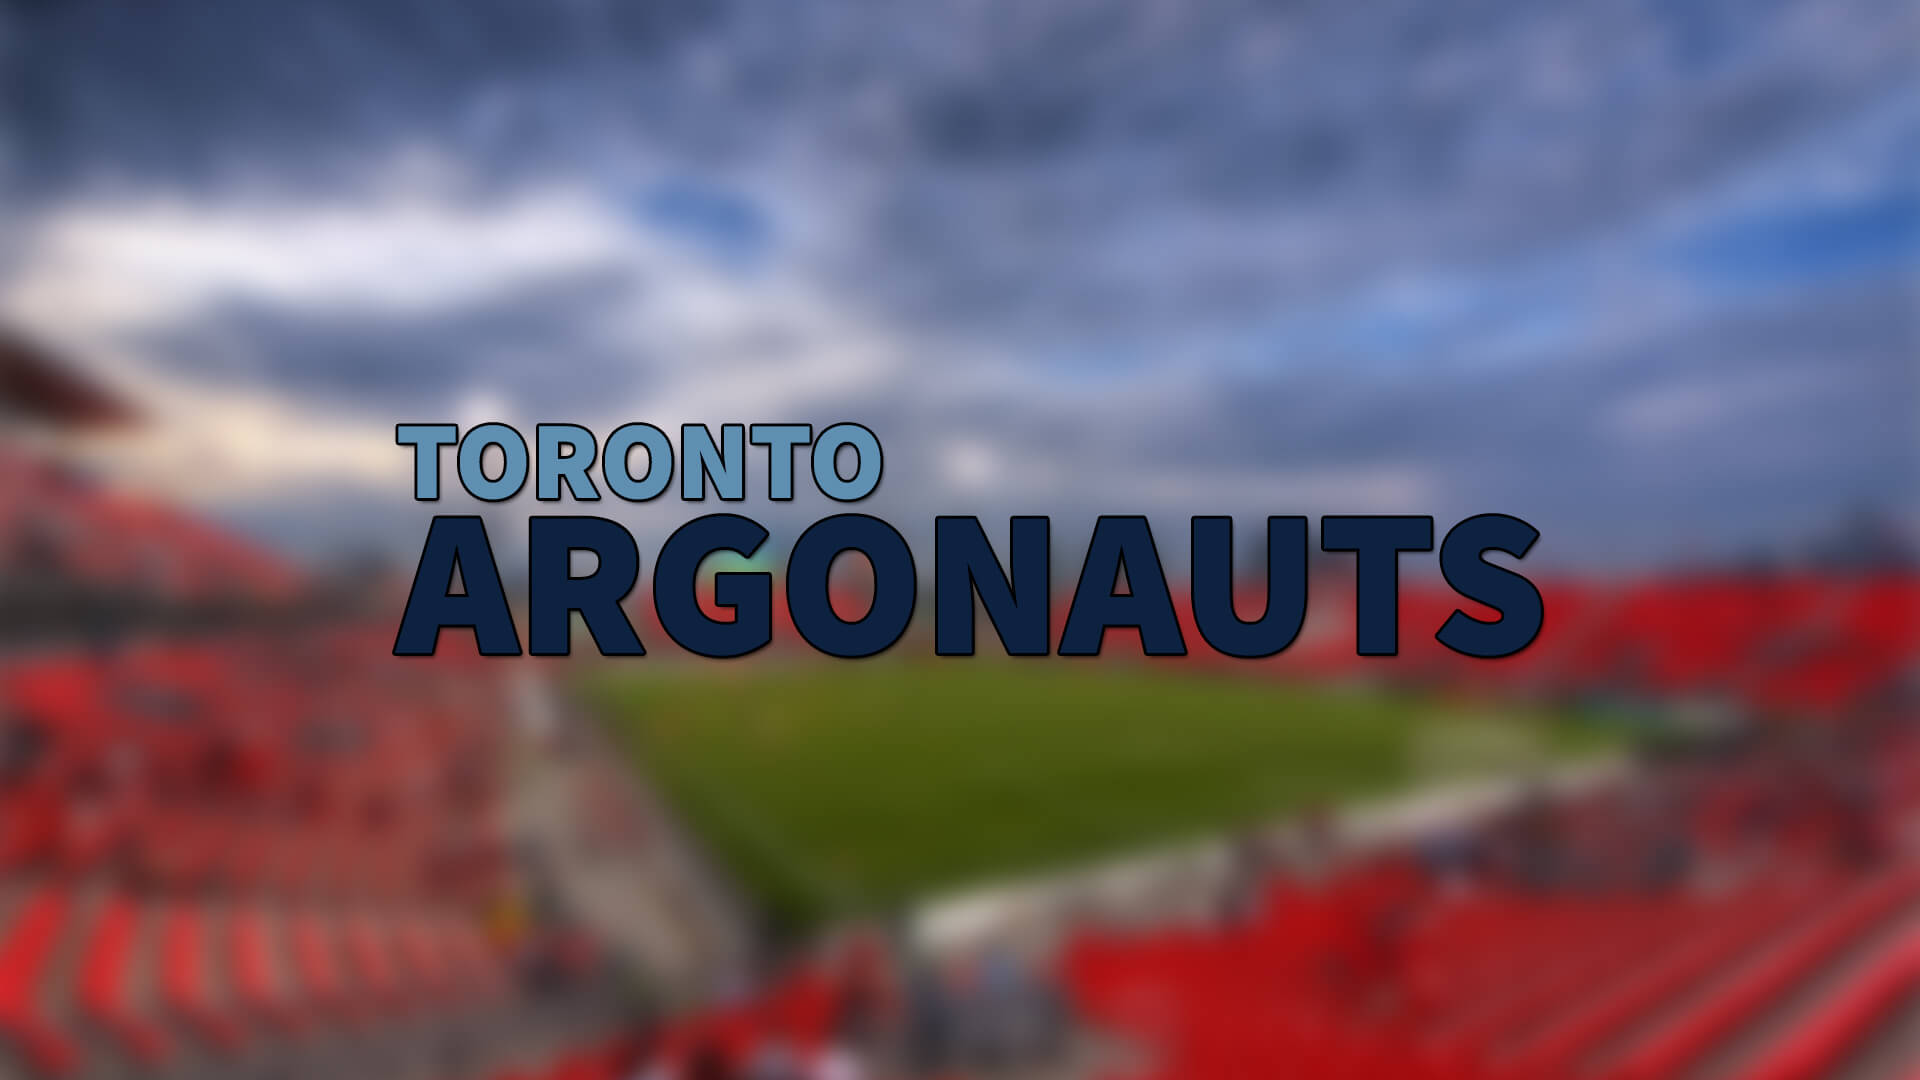 Toronto Argonauts 2 Oyuncuyu Transfer Etti | Korumalı Futbol Türkiye